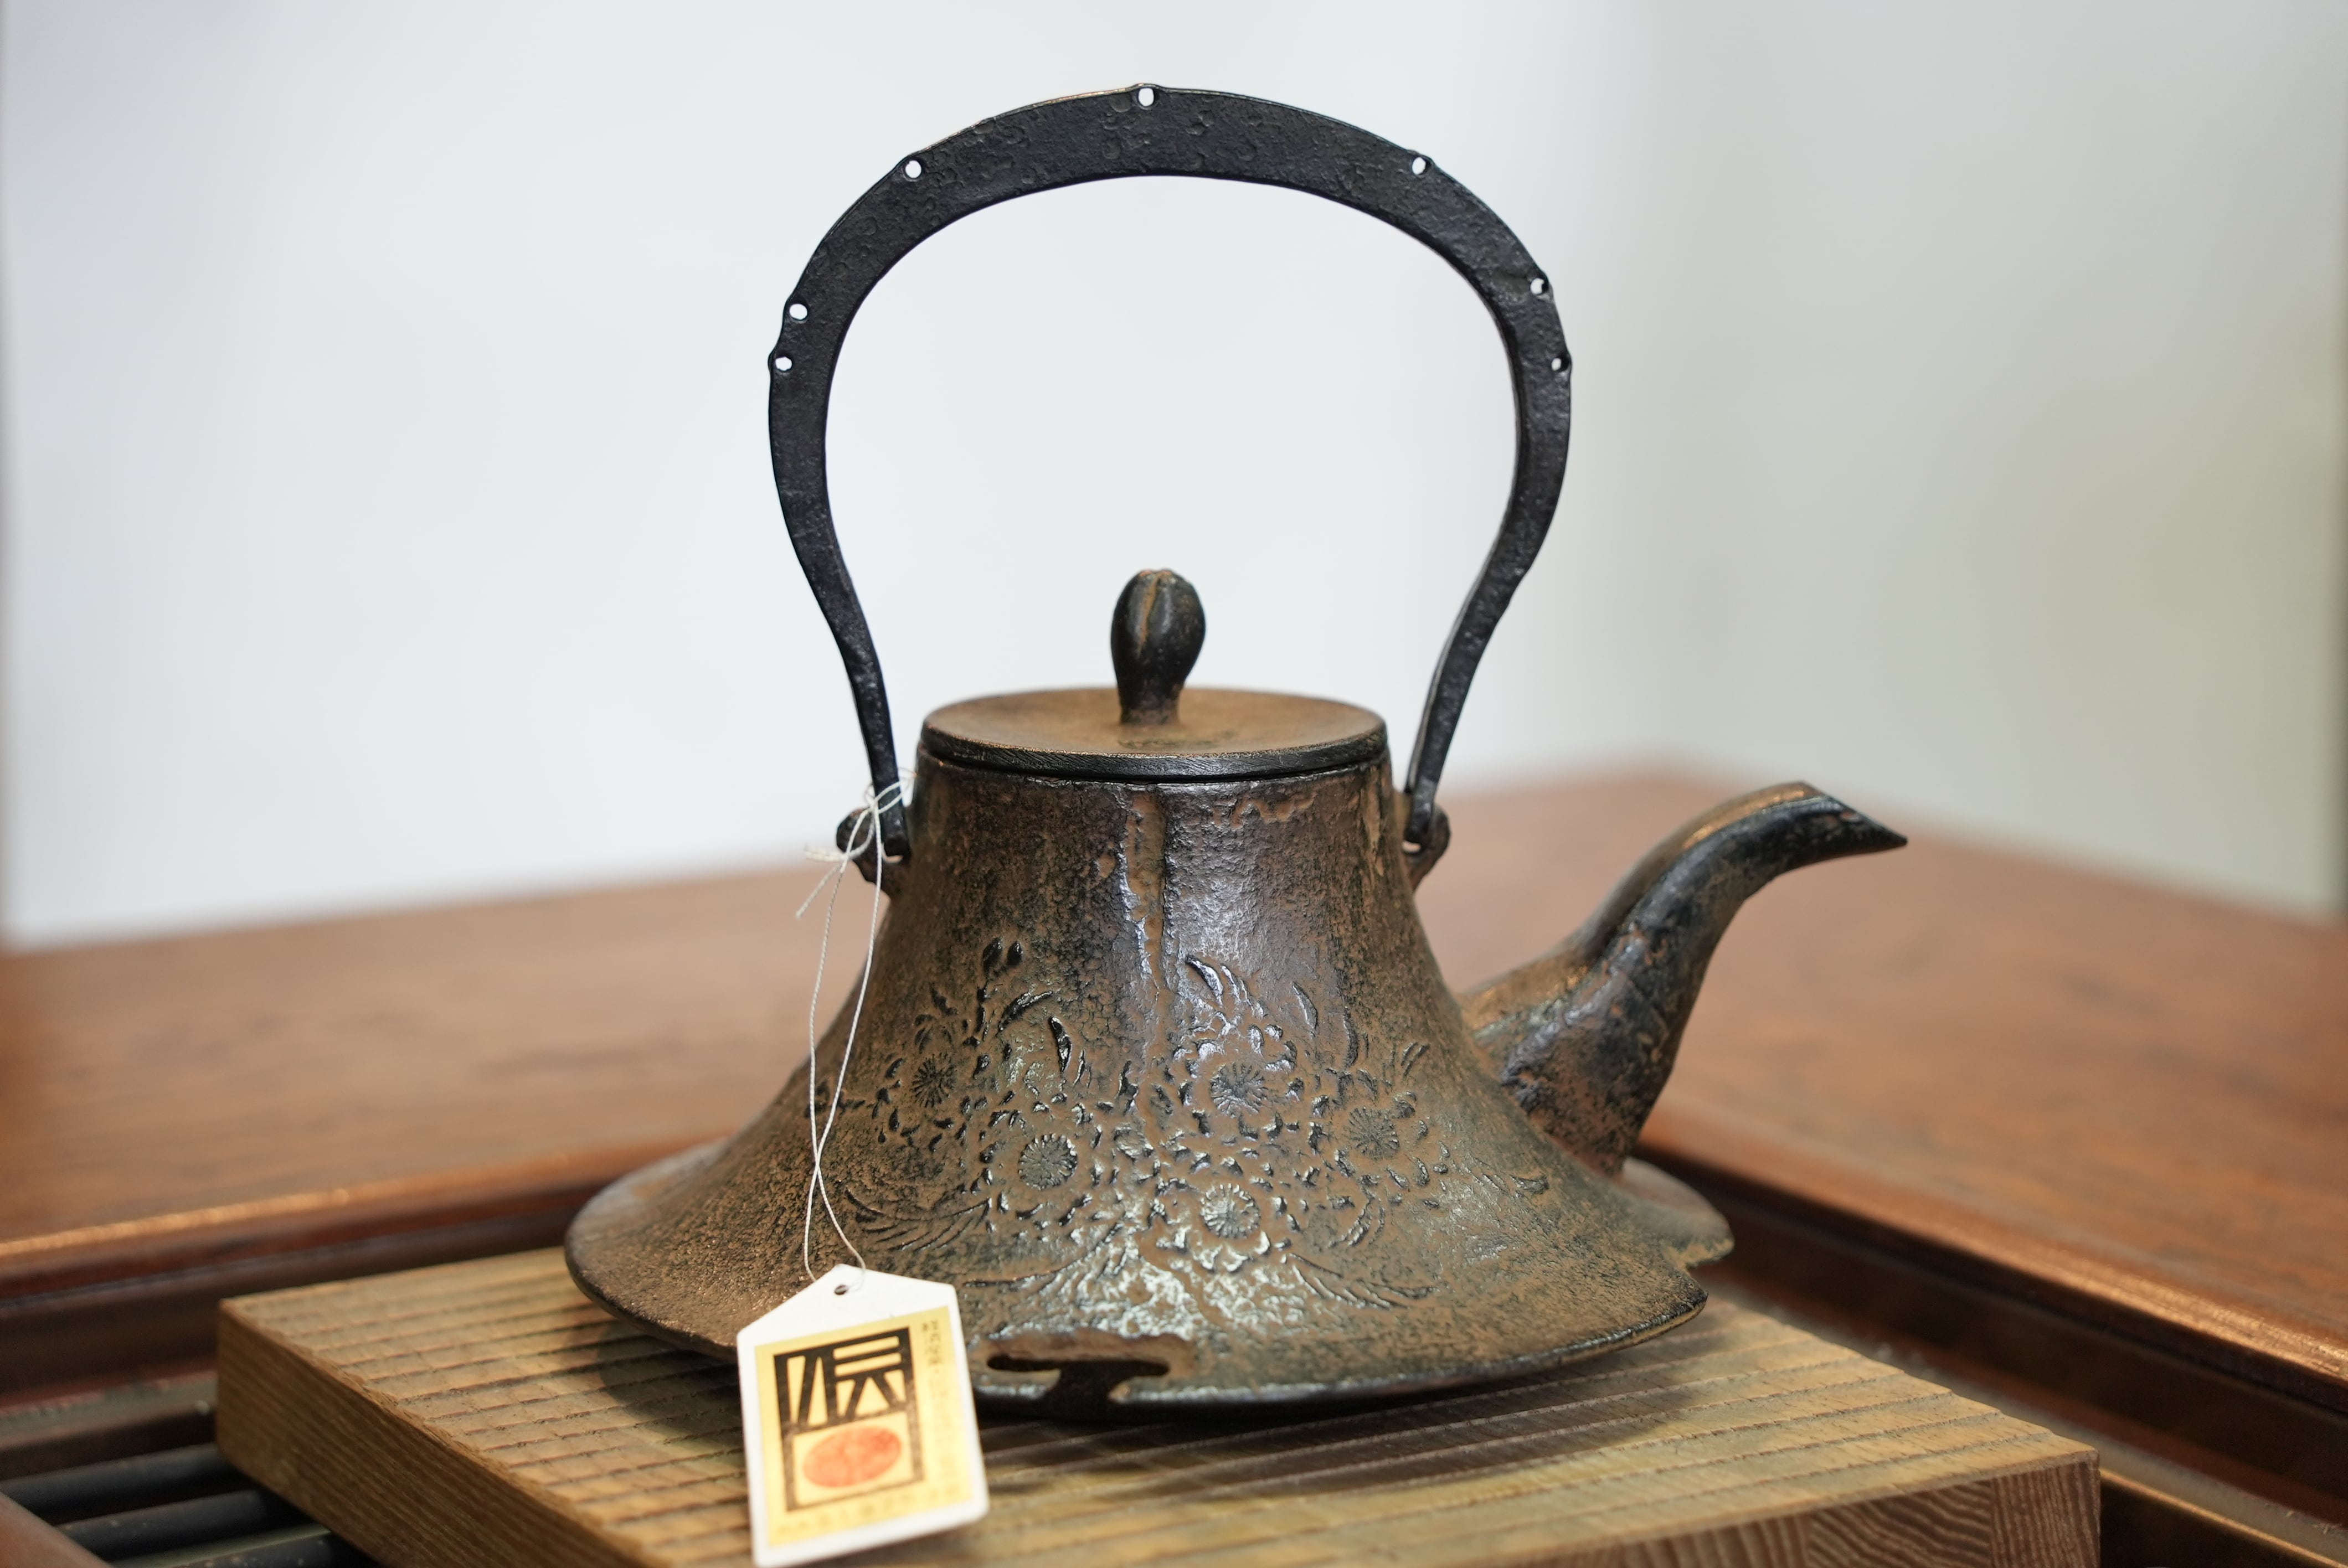 Ikenaga Ironworks: Nambu Cast Iron Tea Kettle Nozomi - Induction